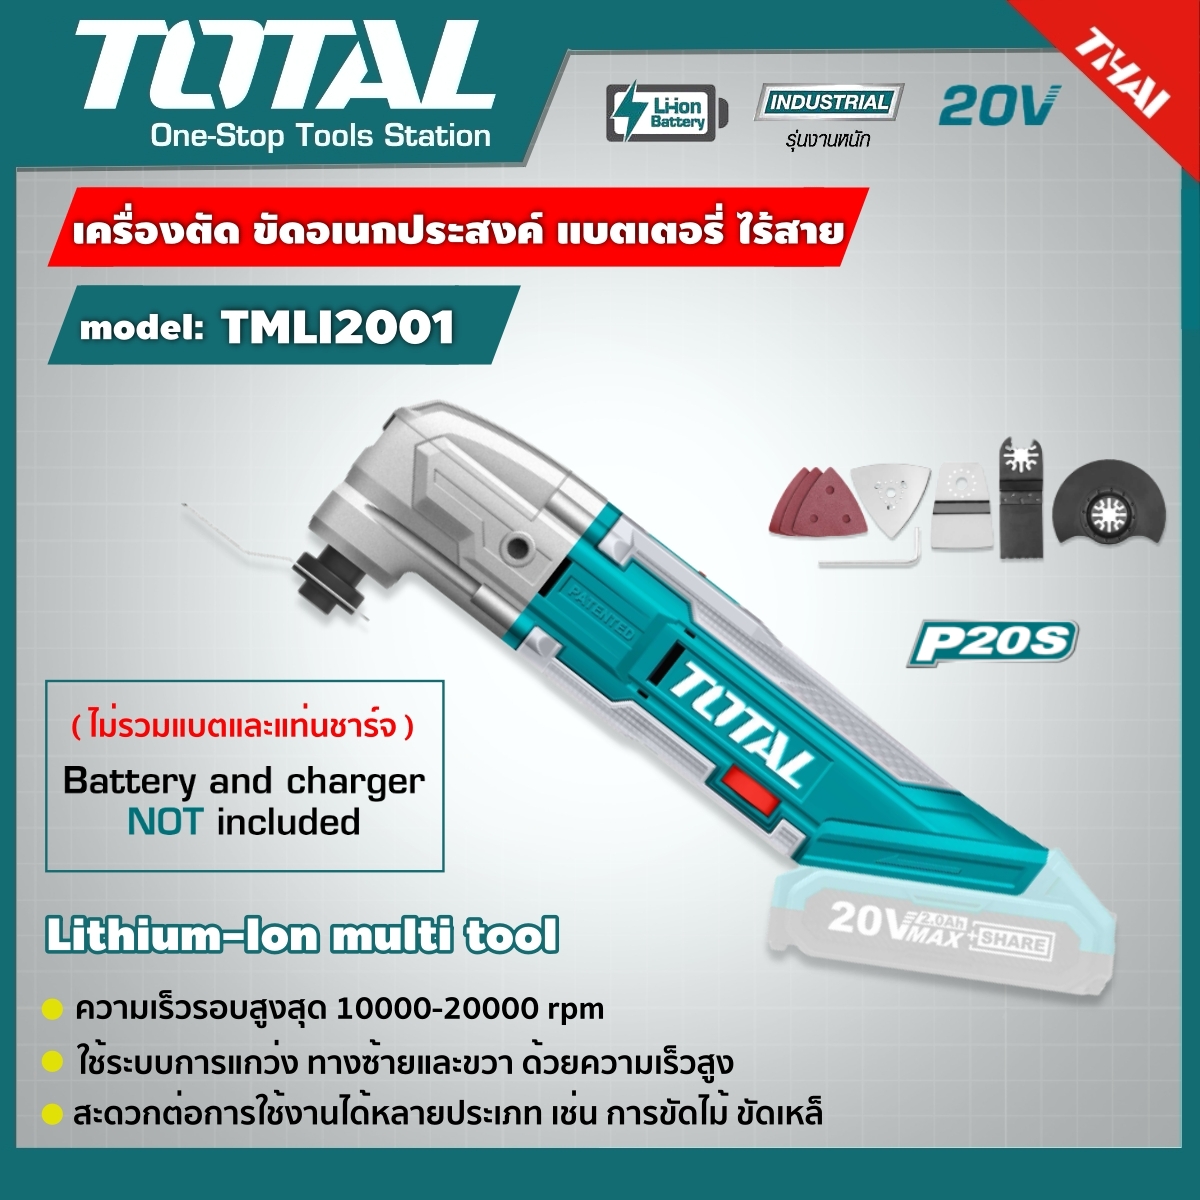 TOTAL 🇹🇭 เครื่อง ตัด ขัด อเนกประสงค์ ไร้สาย 20V ไม่รวมแบตและเครื่องชาร์จ รุ่น TMLI2001 Lithium-Ion multi-tool อุปกรณ์ช่าง เครื่องมือ ** ส่งฟรี เคอรี่